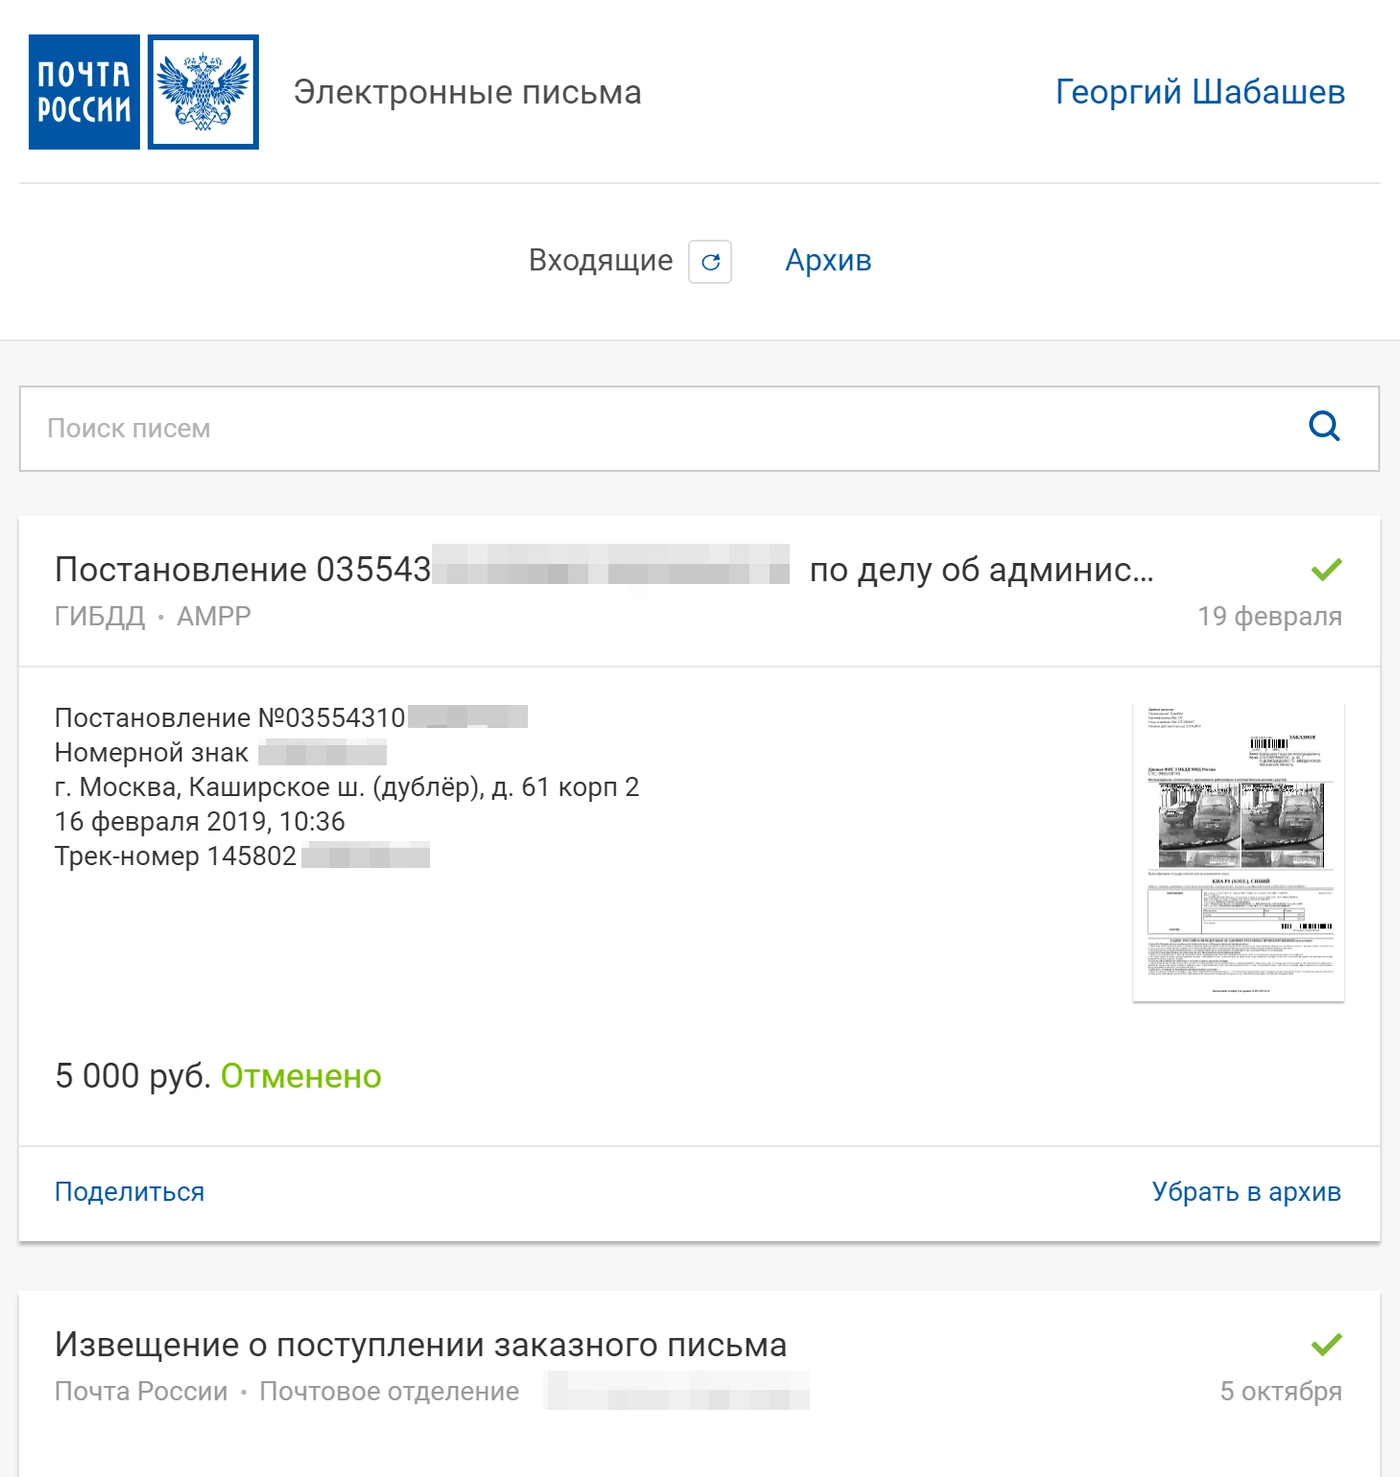 Личный кабинет сервиса zakaznoe.pochta.ru: штраф отменили